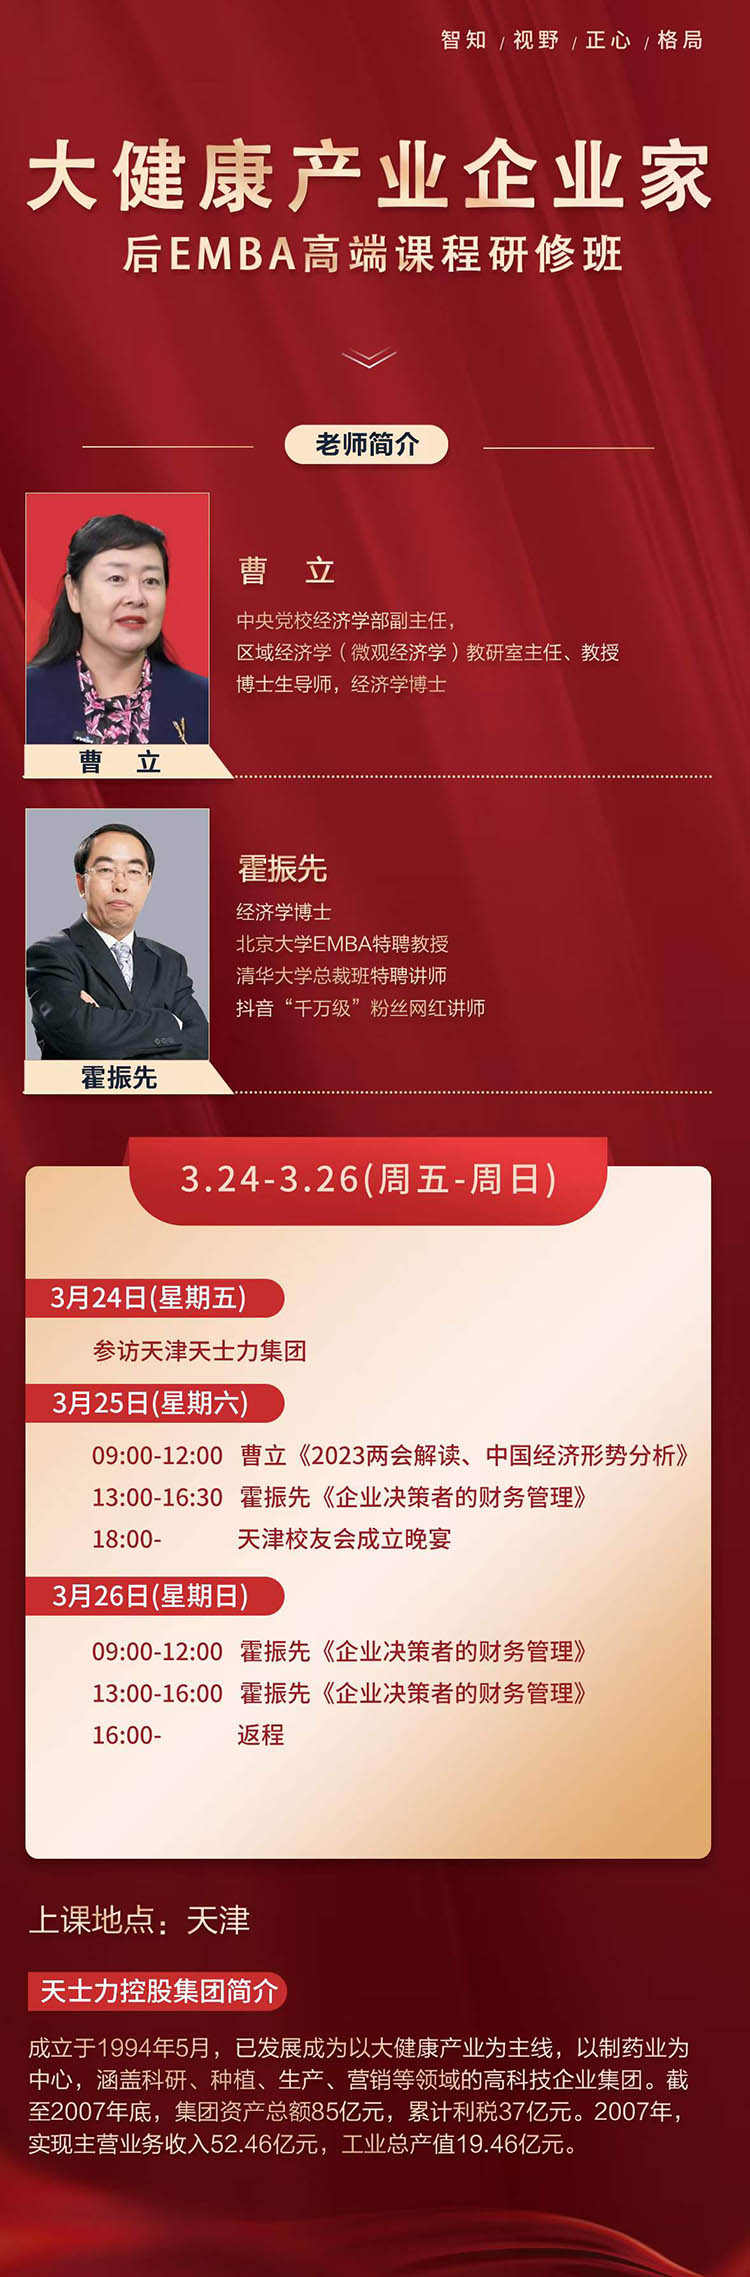 3月24-26日大健康产业后EMBA高端总裁研修班天津开课